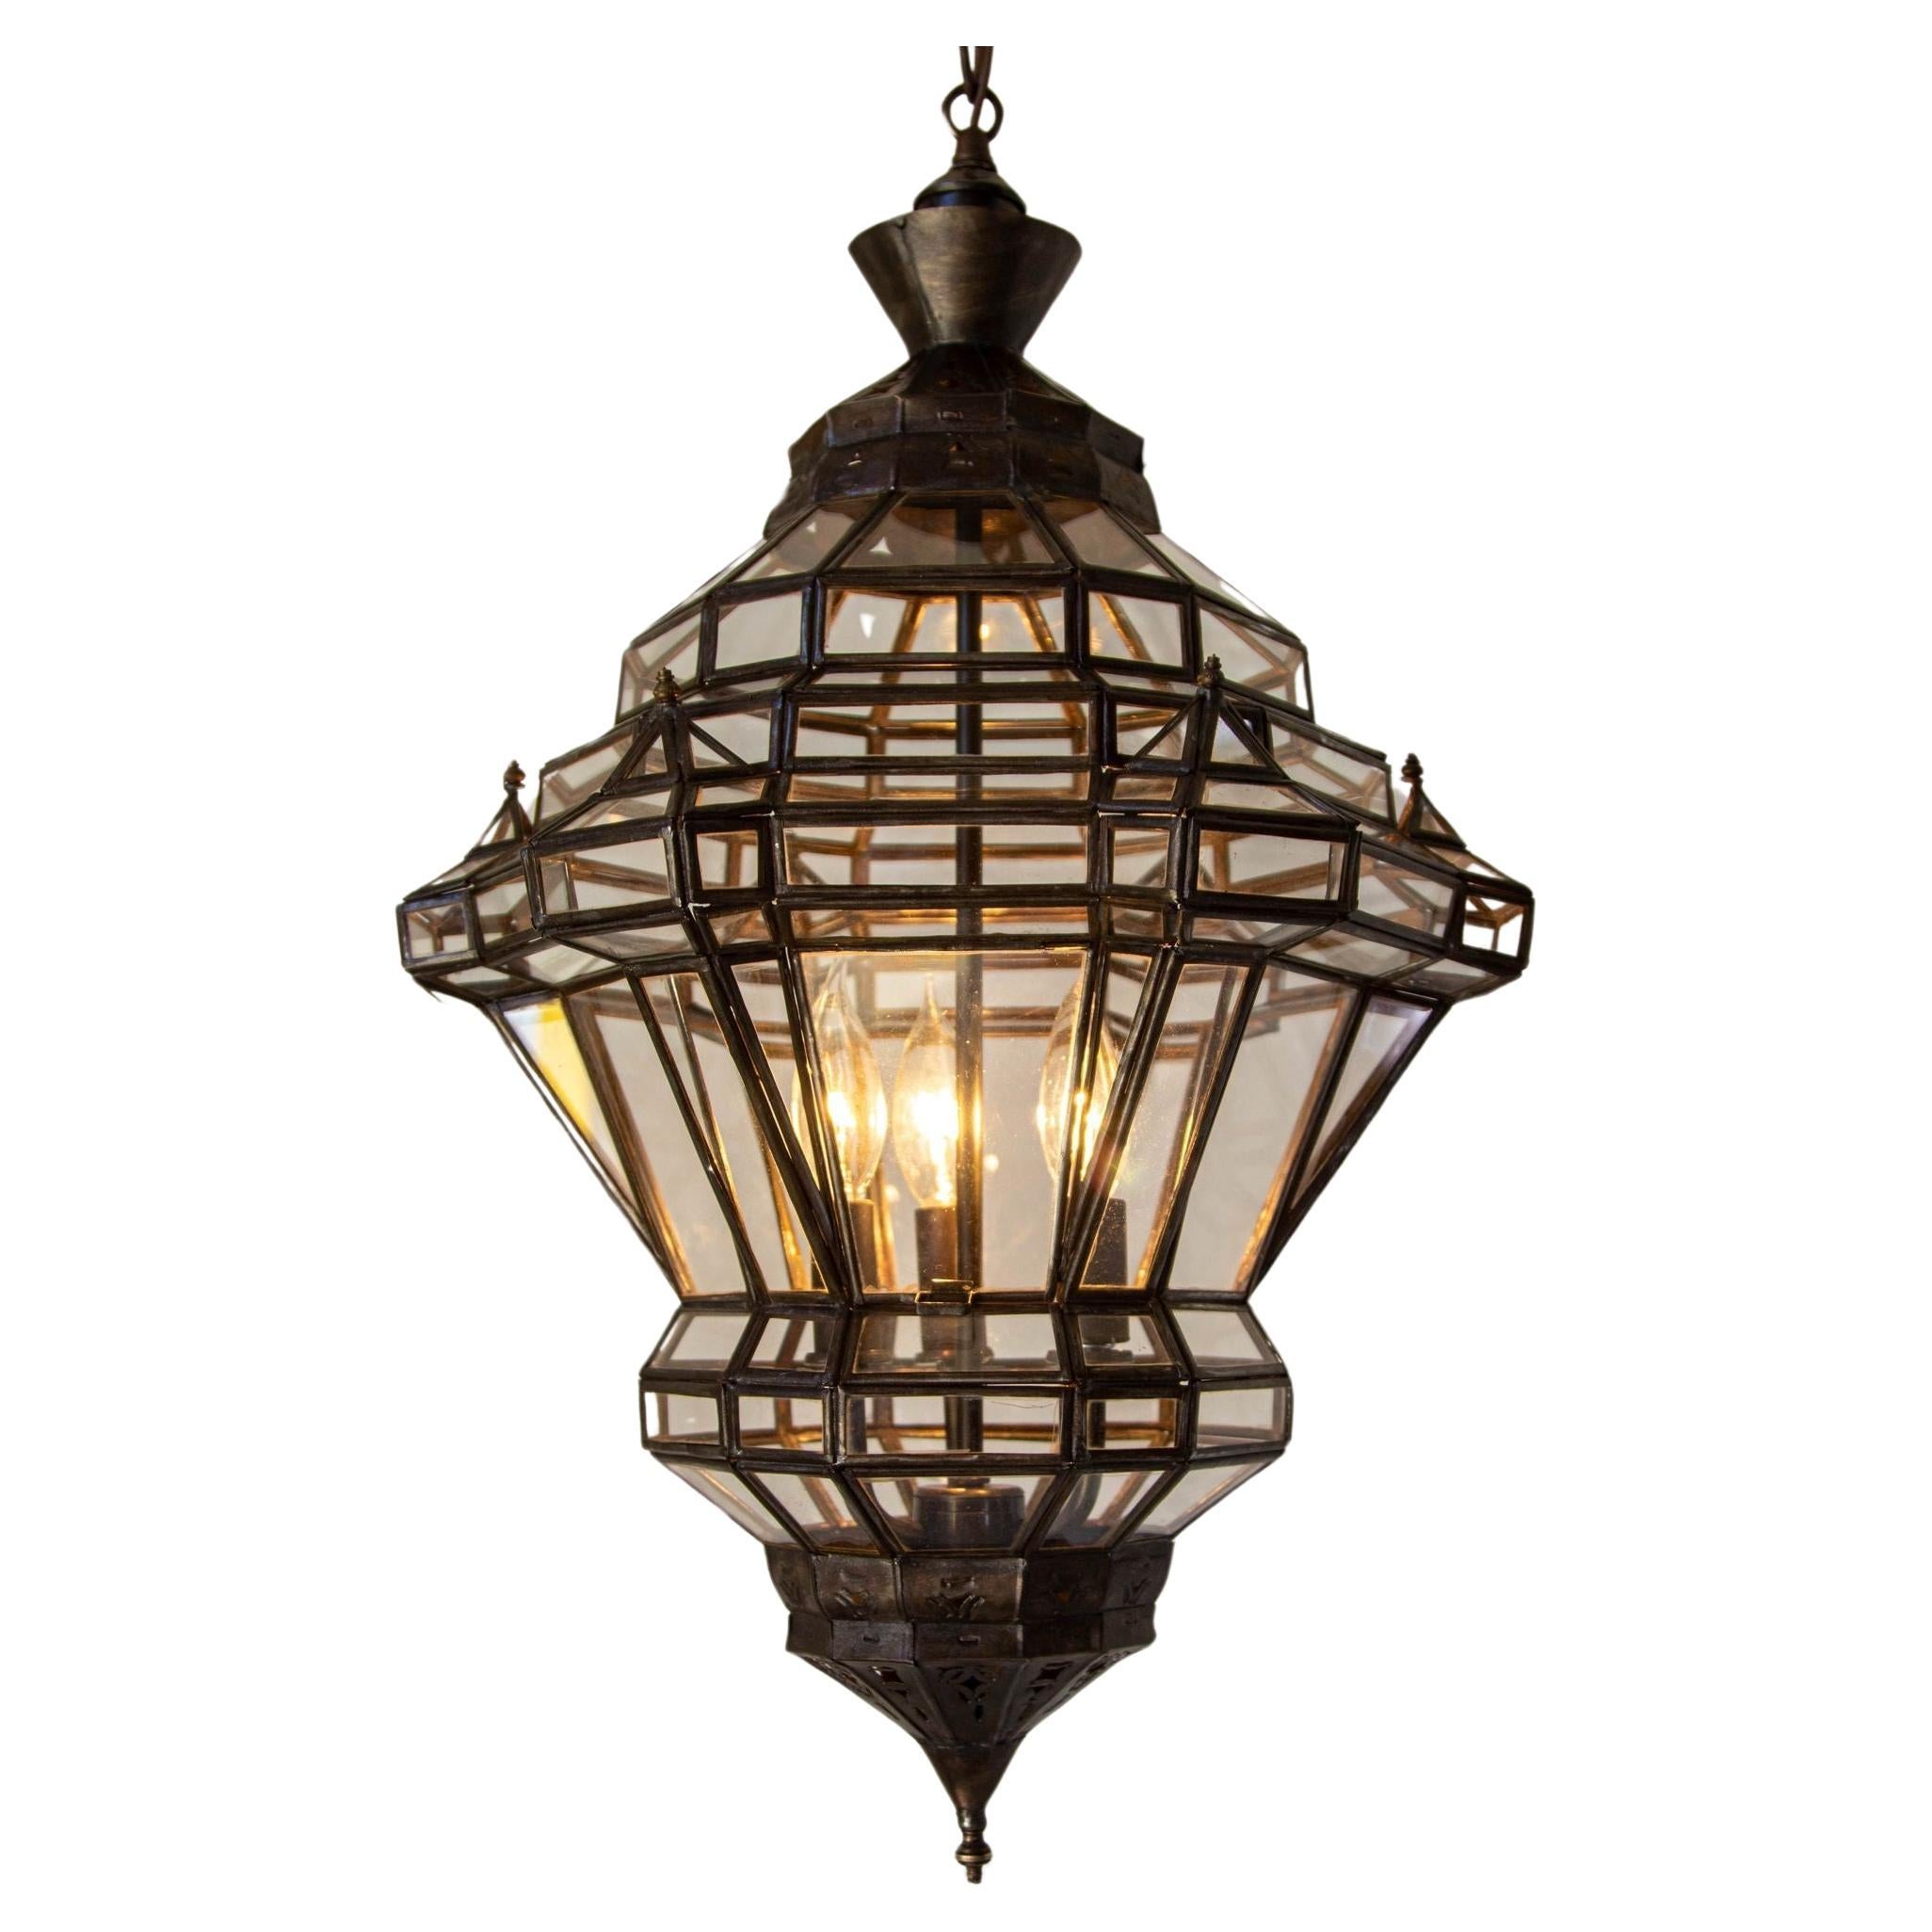 Lanterne marocaine vintage en verre transparent Moorish Granada style espagnol